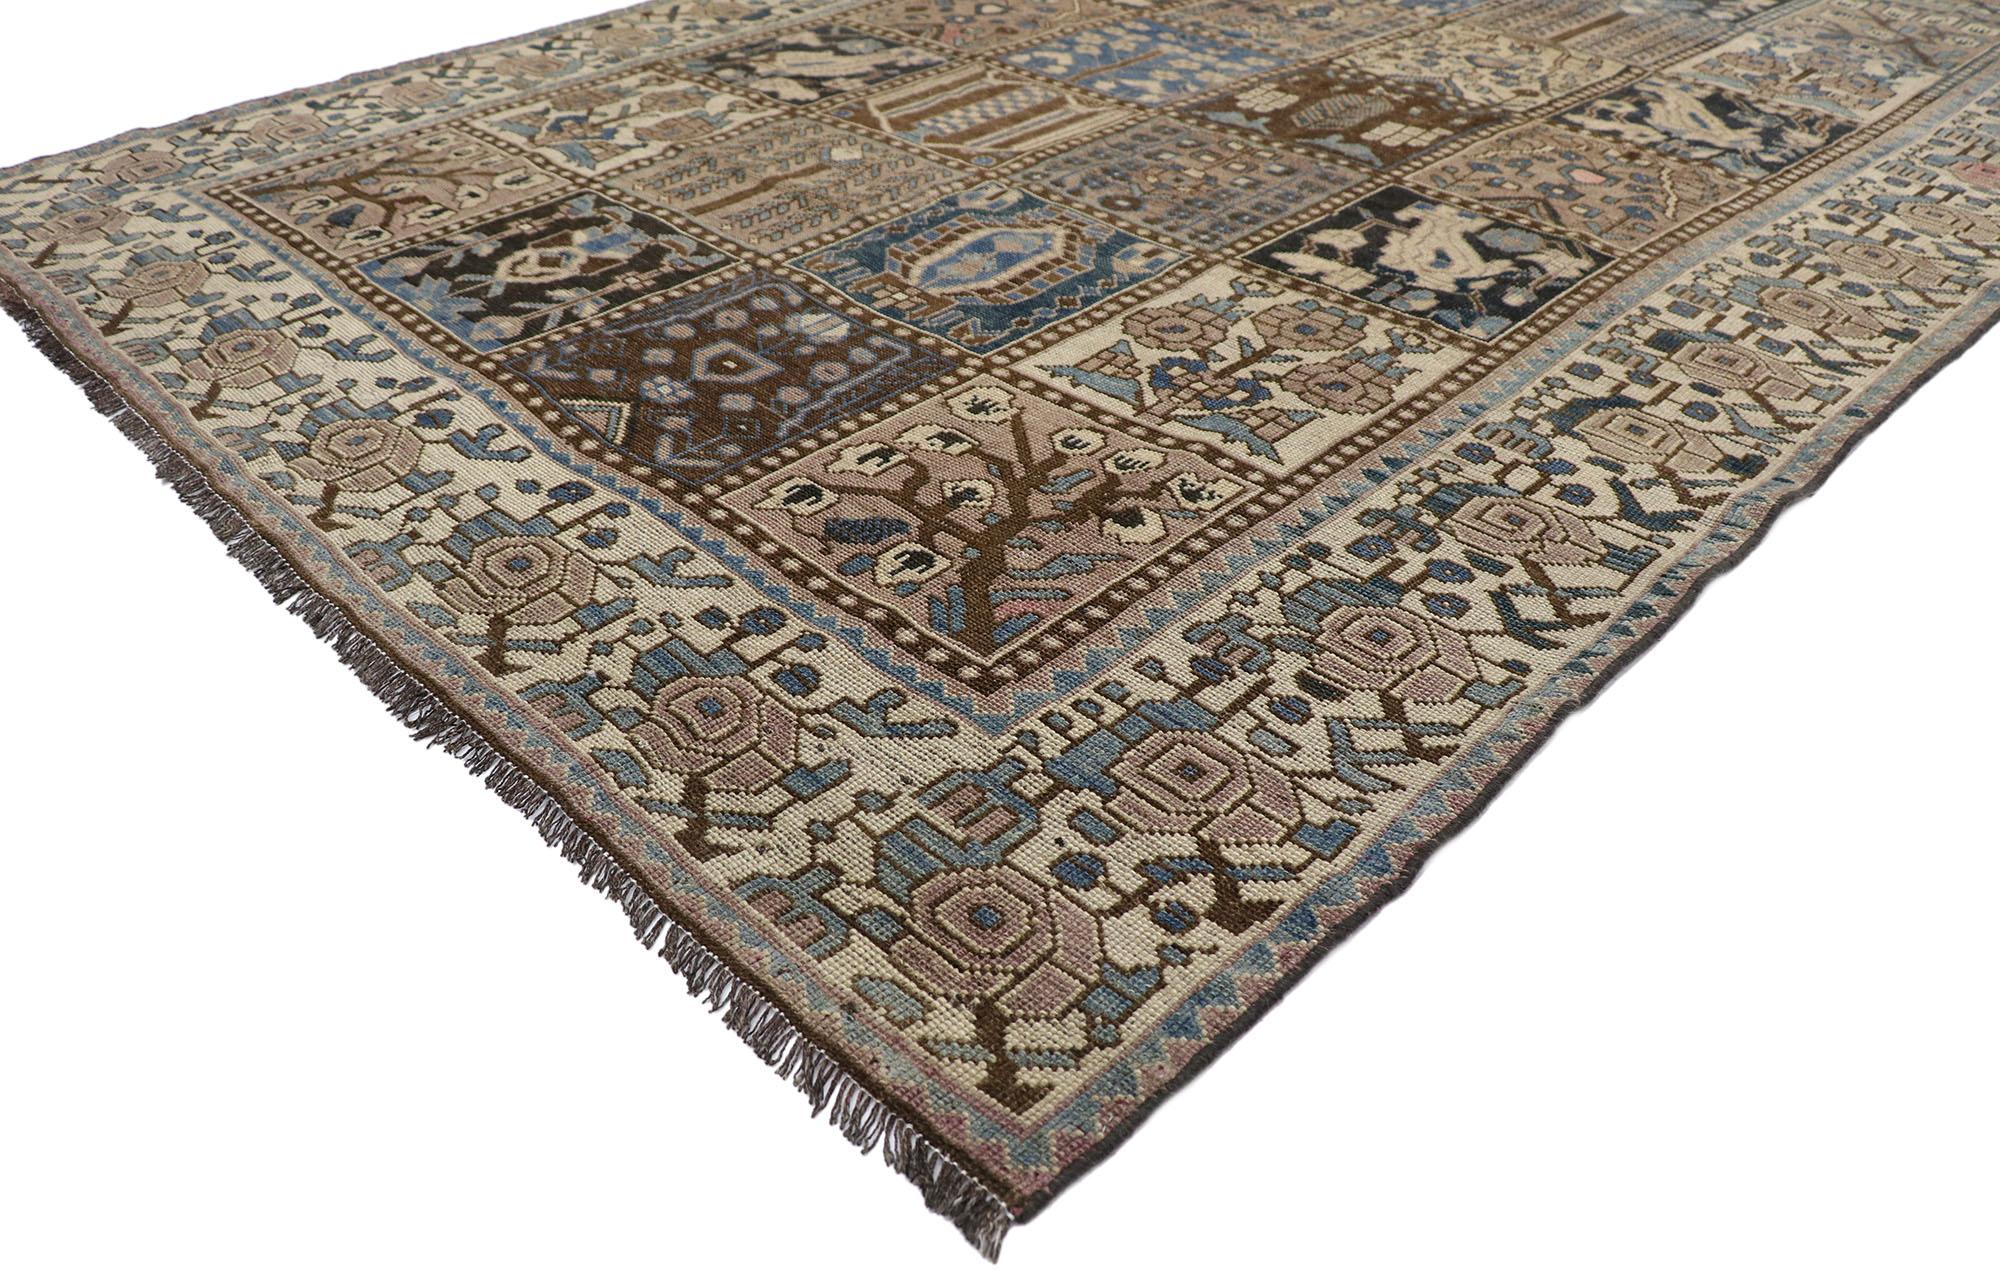 60821, tapis Shiraz persan ancien et vieilli avec motif Garden Panel Four Seasons. Intelligemment composé et distinctement bien équilibré, ce tapis Shiraz persan antique en laine nouée à la main et vieillie prendra une allure habitée qui semble